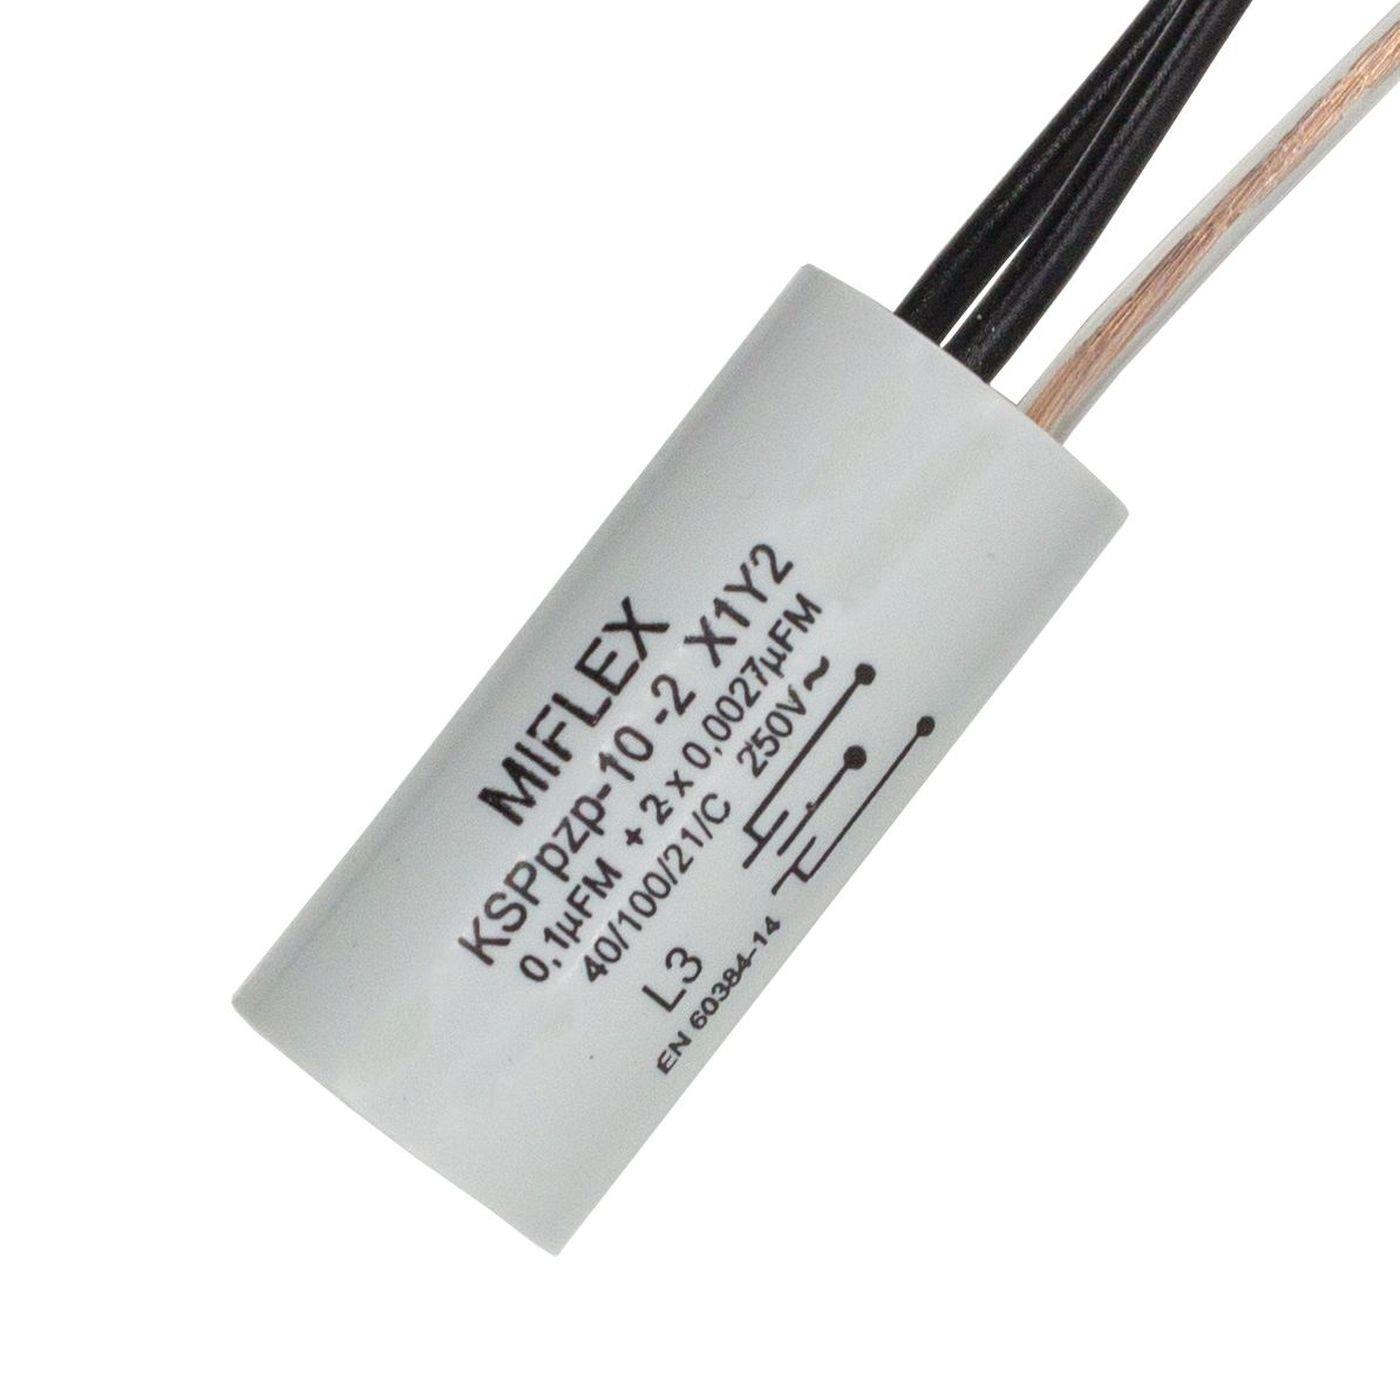 Entstör Kondensator Radial 1x 0,1µF + 2x 0,0027µF (2,7nF) 250V